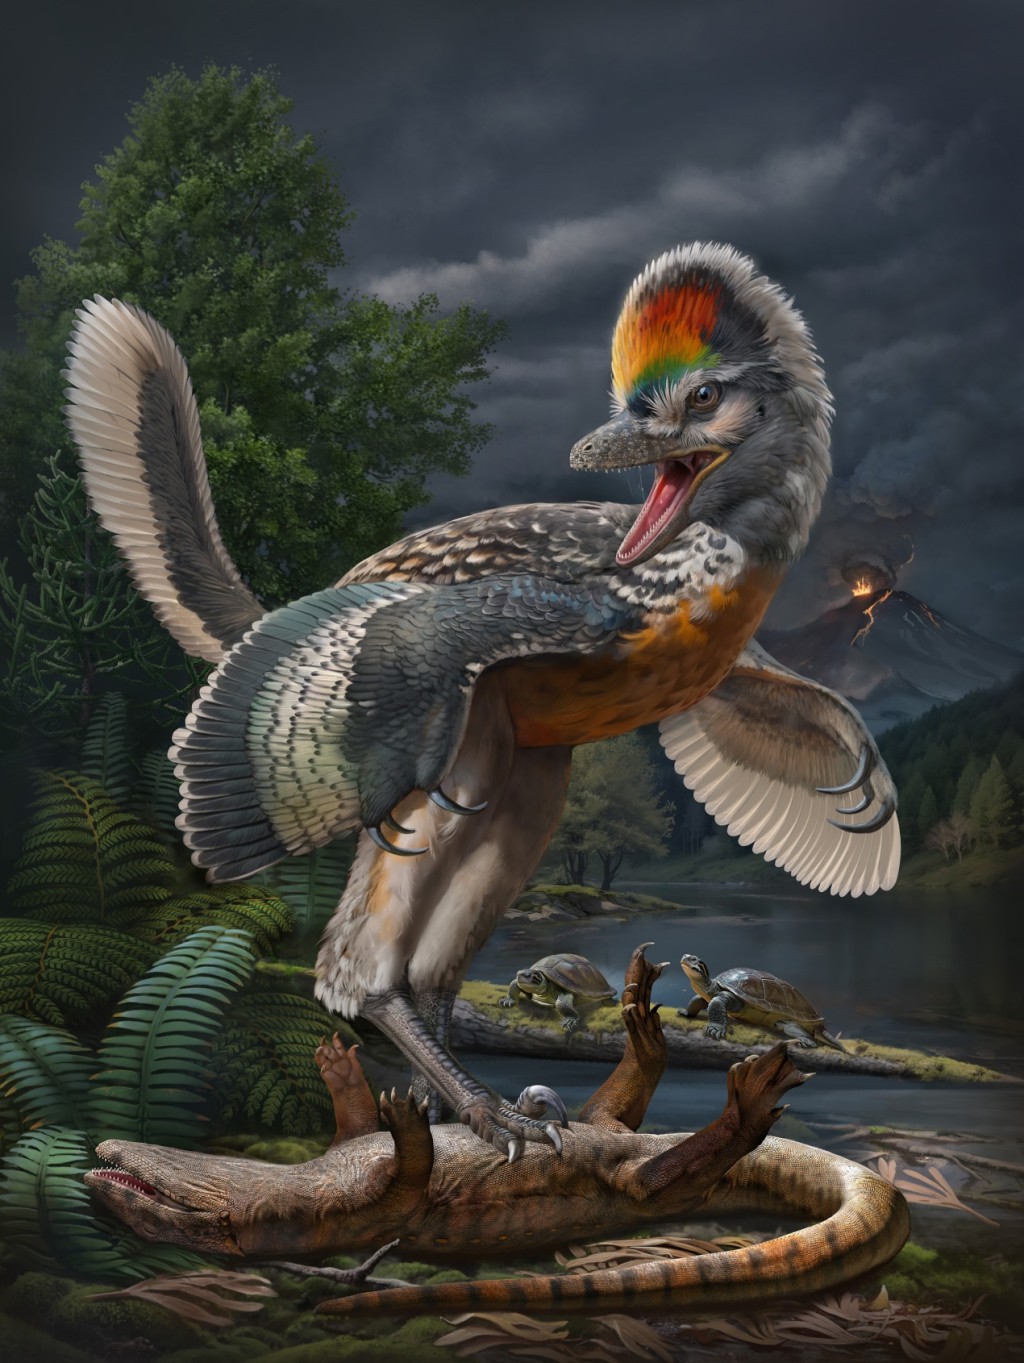 约1.5亿年前鸟翼类恐龙「奇异福建龙」及「政和动物群」生态复原图。中国科学院古脊椎所